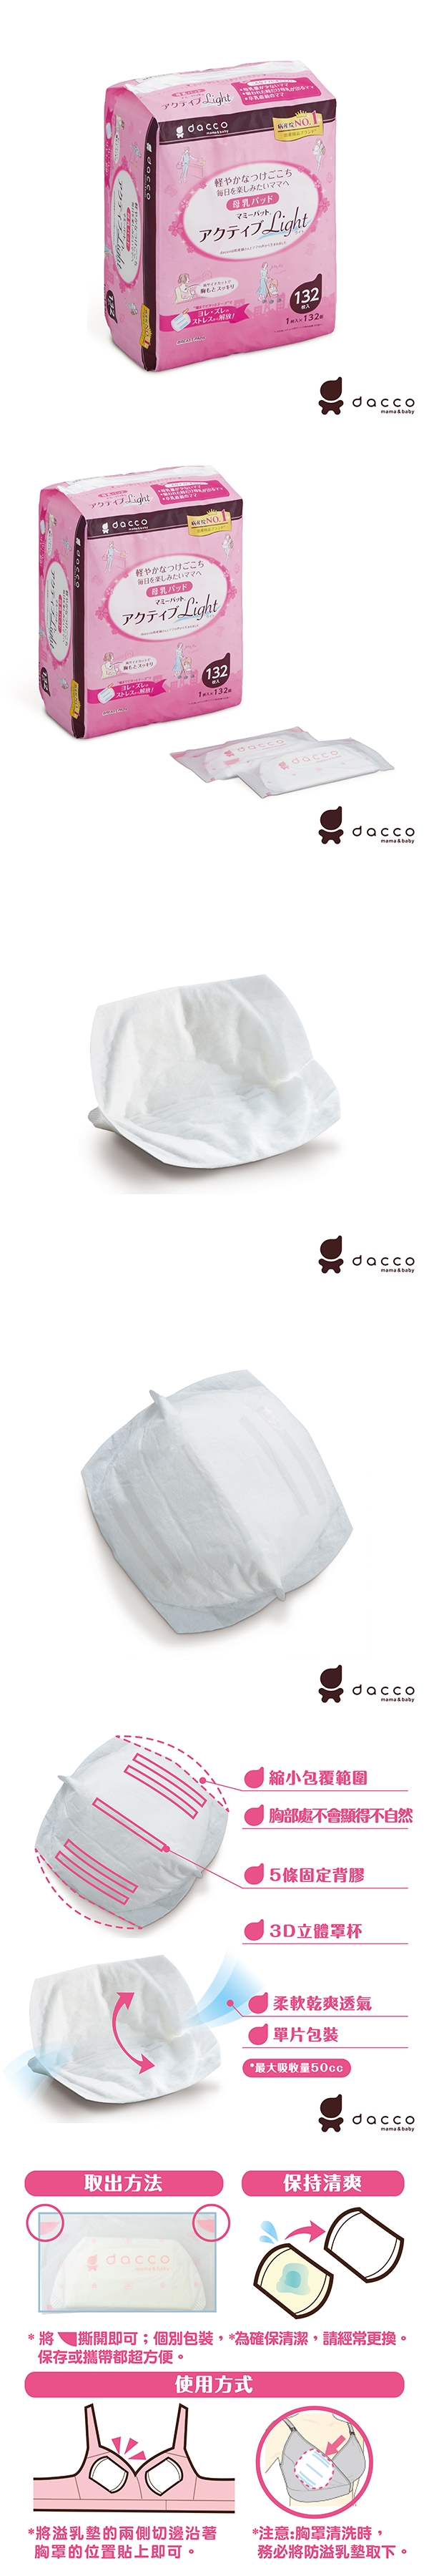 唯可-日本Osaki防溢乳墊(量少型)白色132片(OS989228)